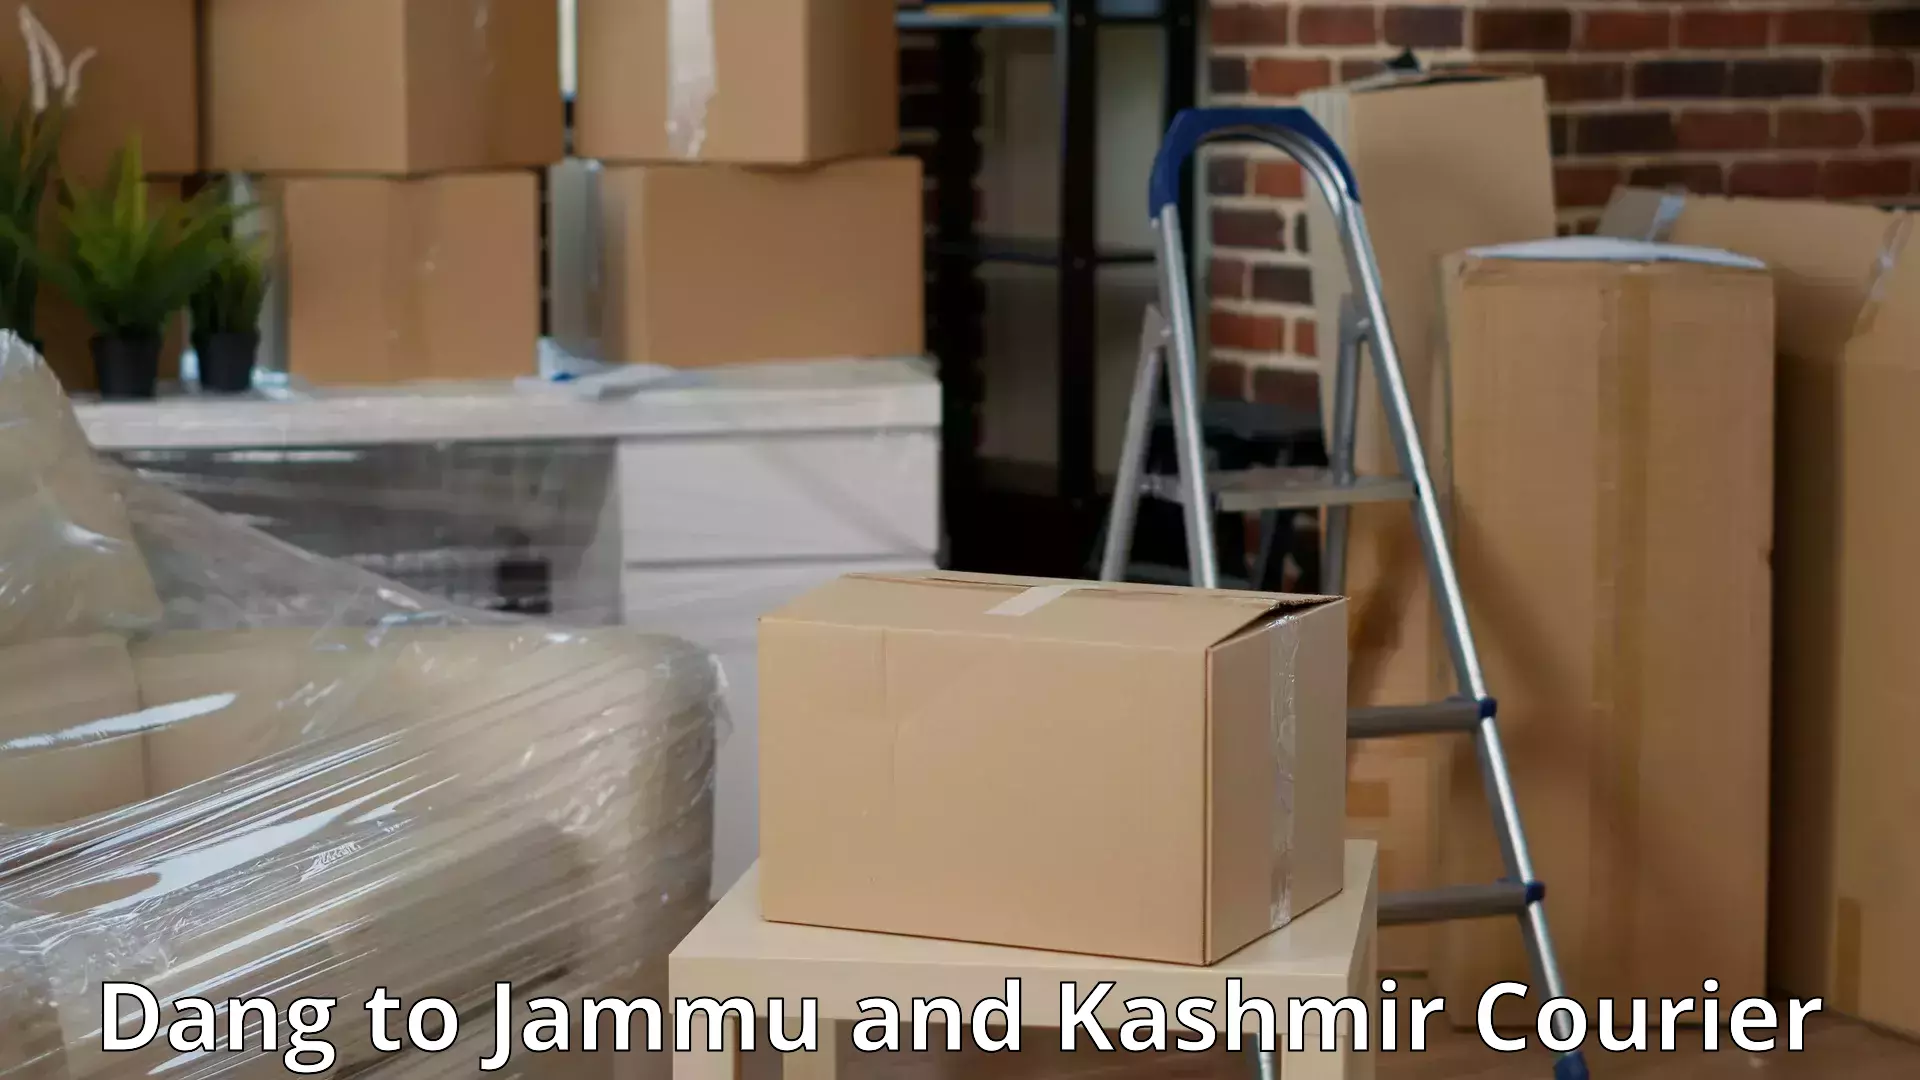 Furniture transport experts Dang to Jammu and Kashmir